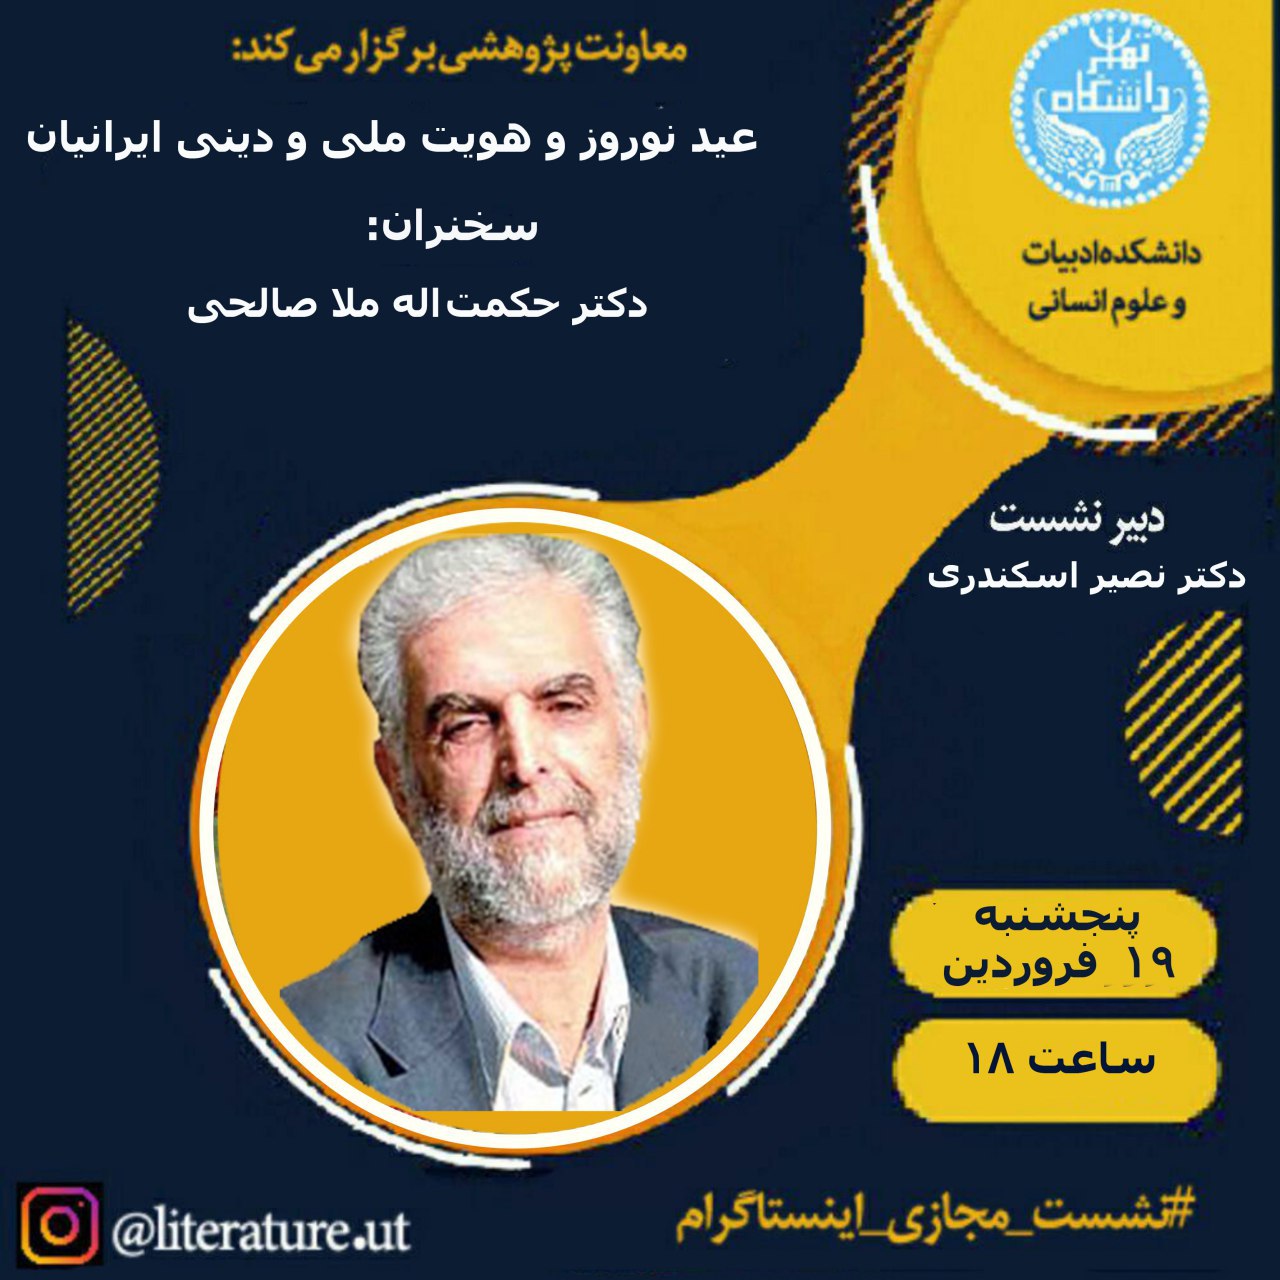 وبینار عید نوروز و هویت ملی و دینی ایرانیان